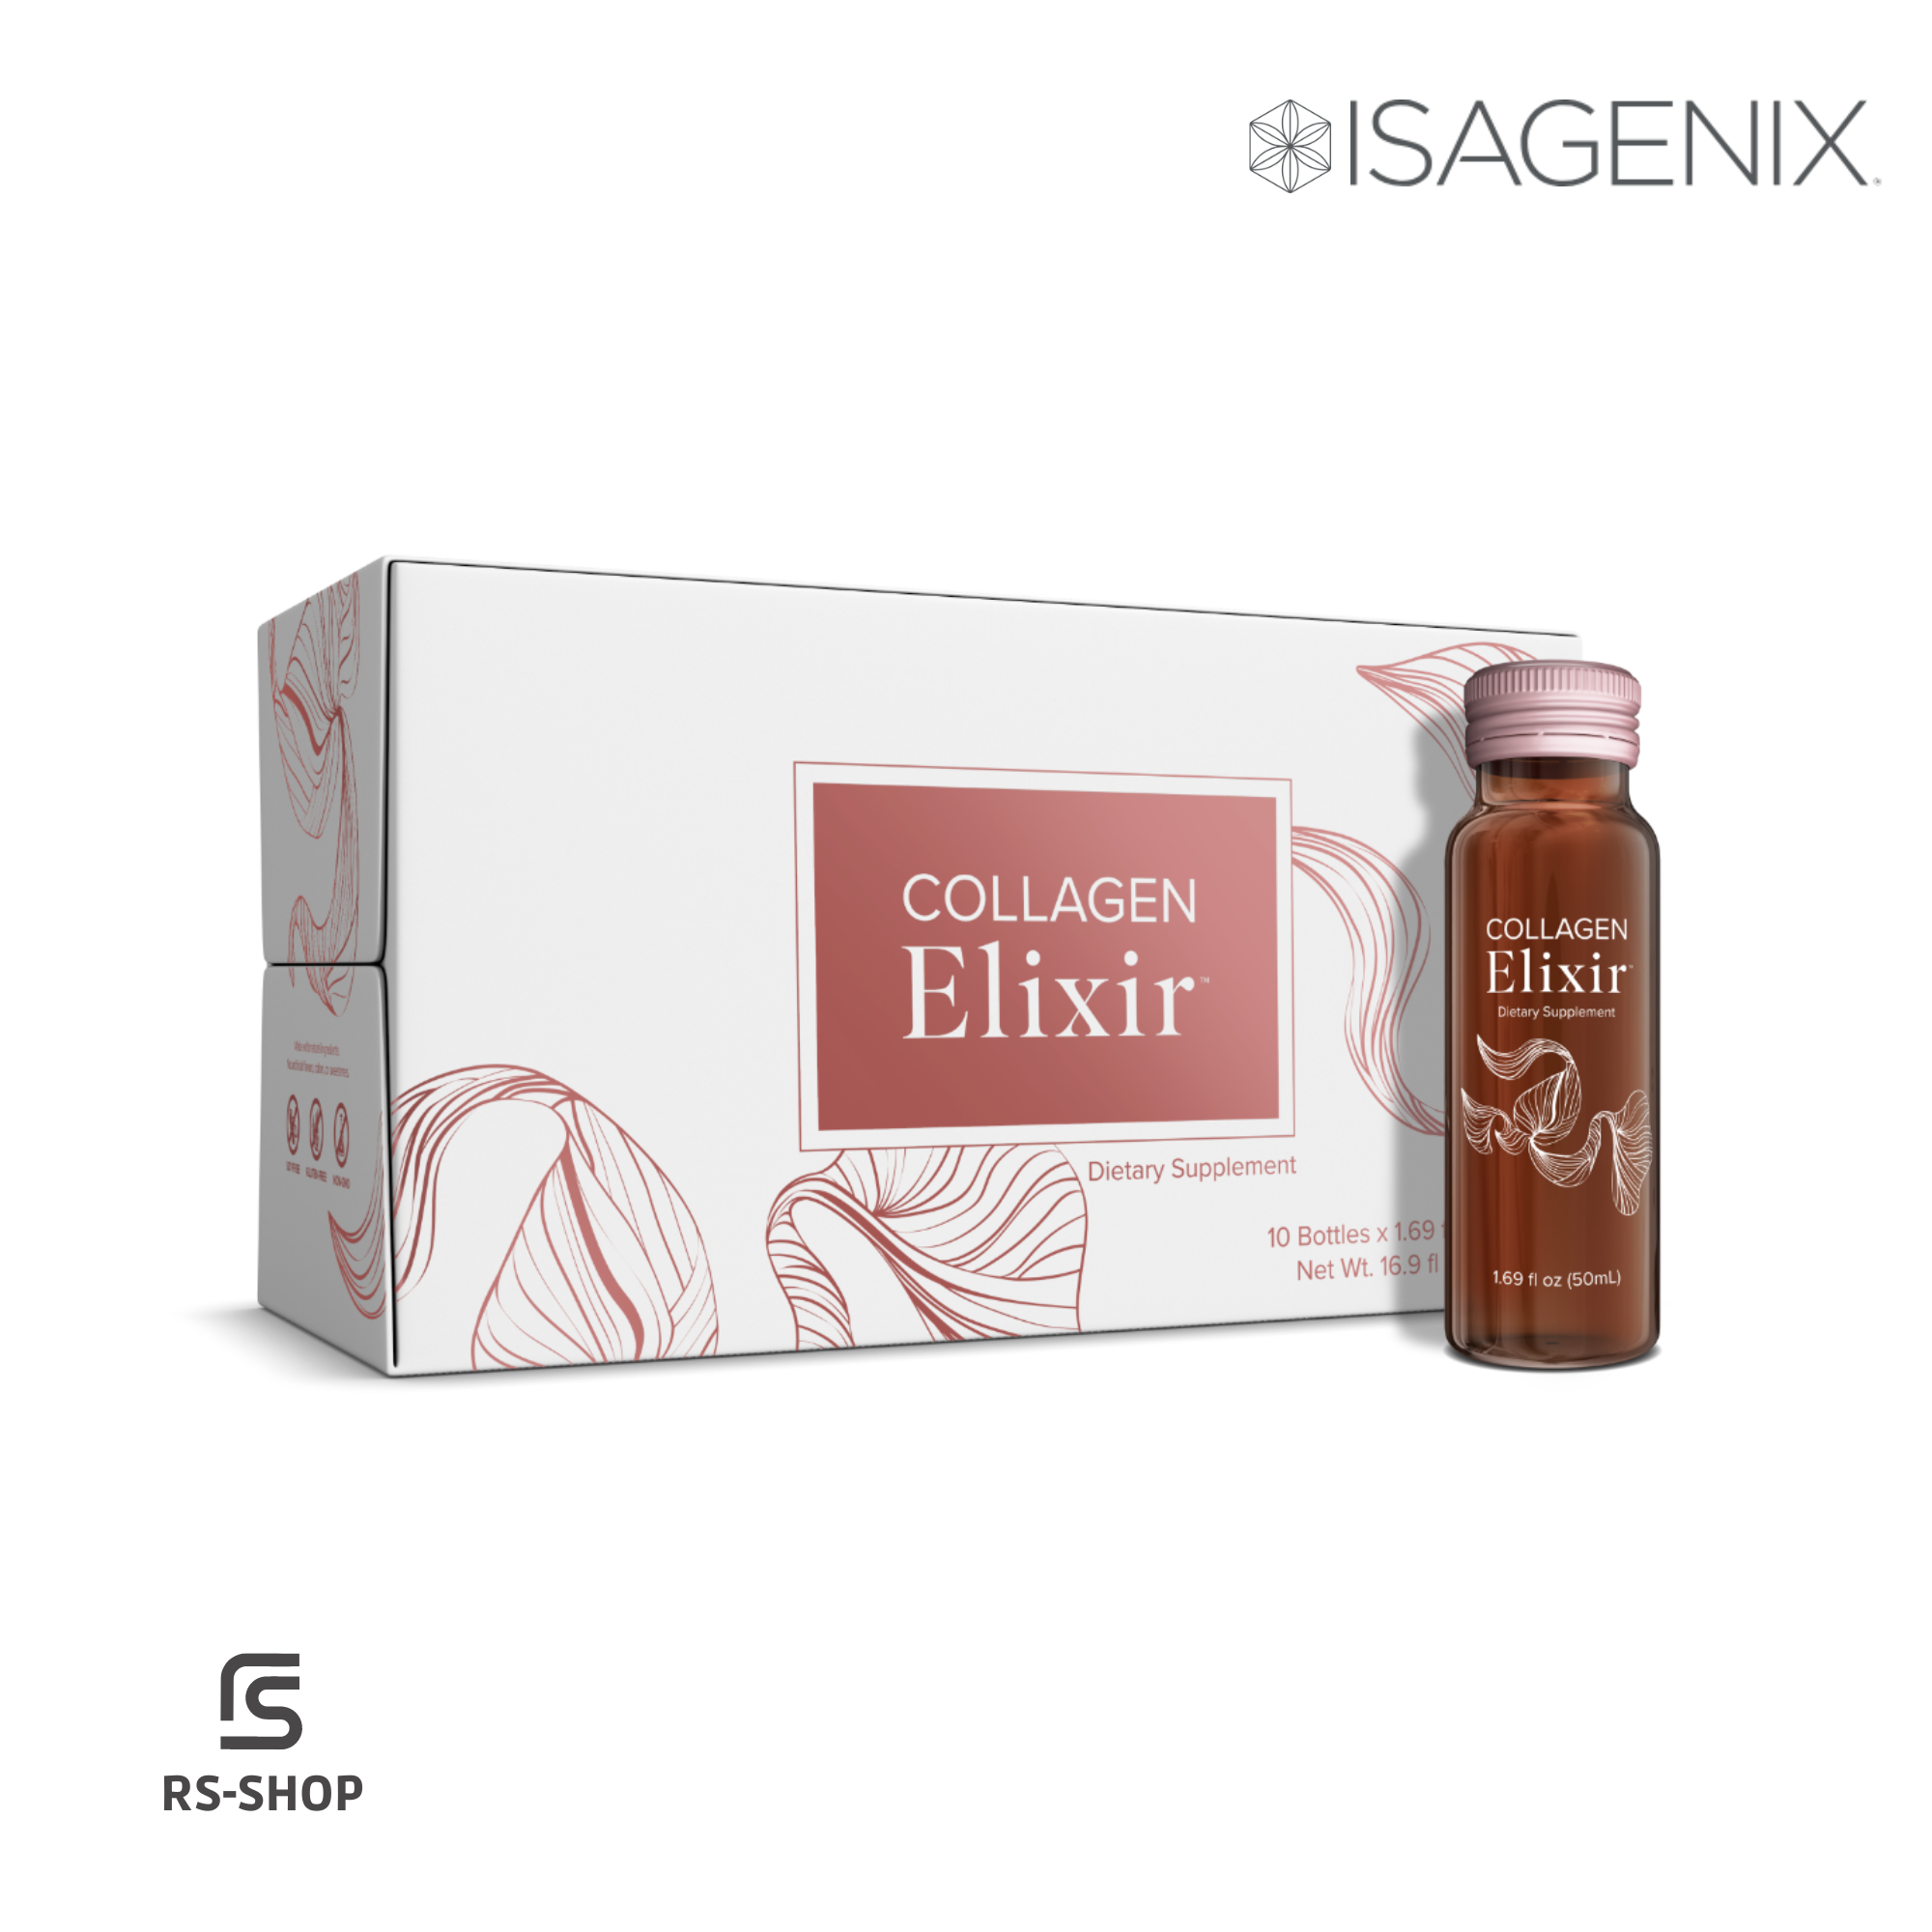 ISAGENIX - Collagen Elixir - 10 bottles